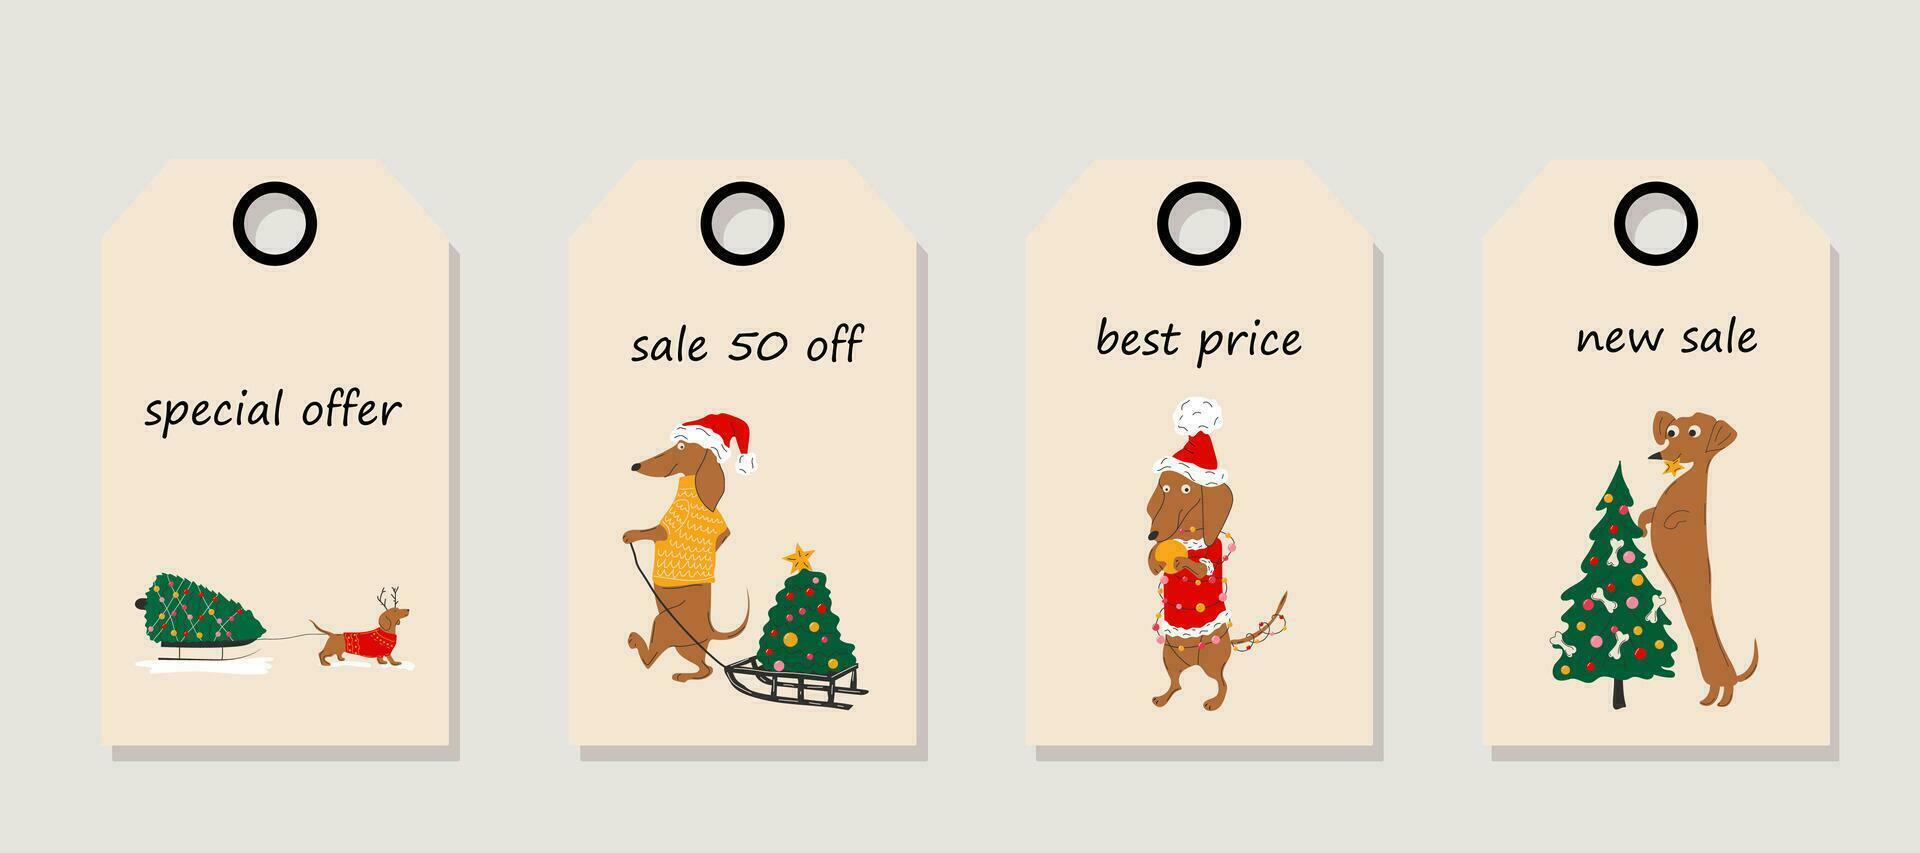 Vektor einstellen von Rabatt Preis Stichworte. Etiketten mit Dackel Hunde zieht ein Weihnachten Baum auf ein Schlitten und schmücken Weihnachten Bäume. Weihnachten Verkauf.